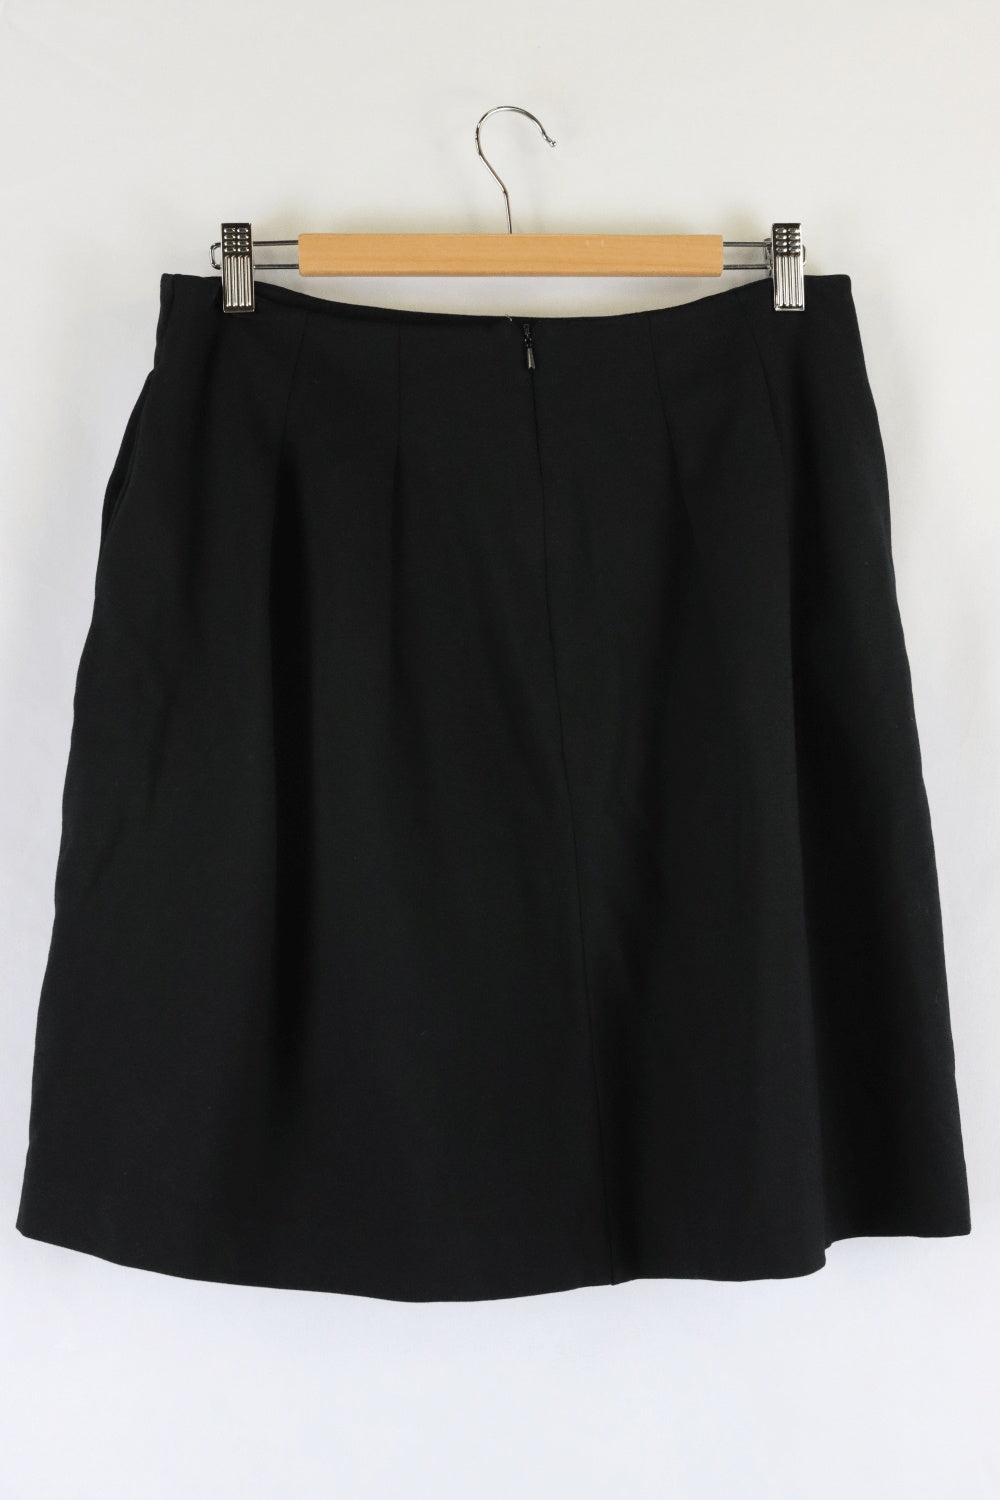 Jigsaw Black Skirt S